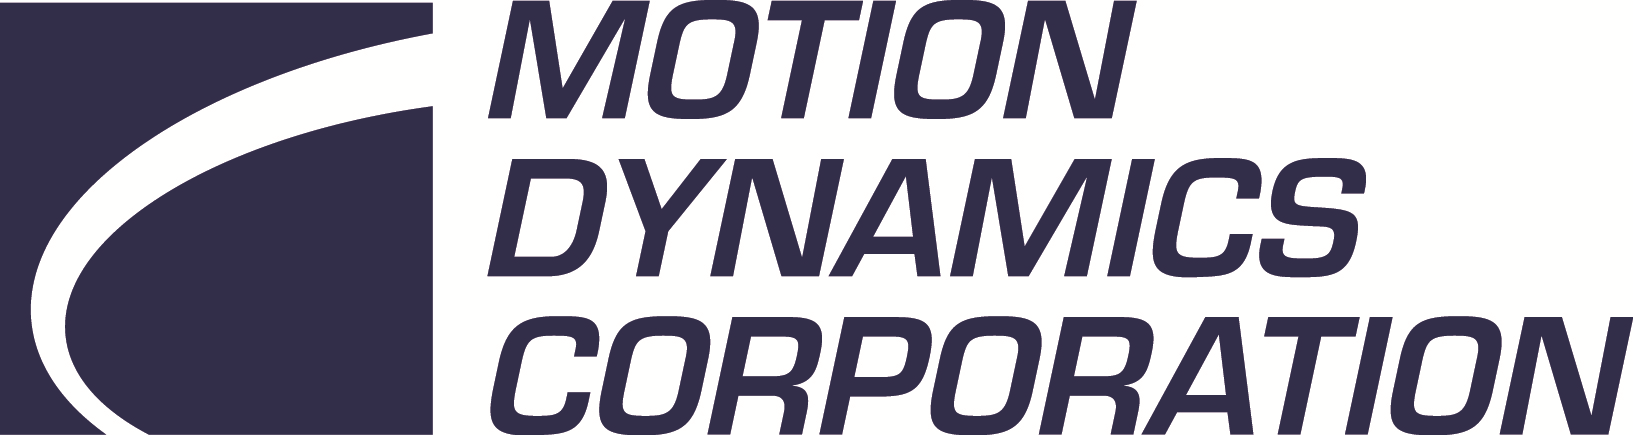 Motion Dynamics Corporation Company Logo